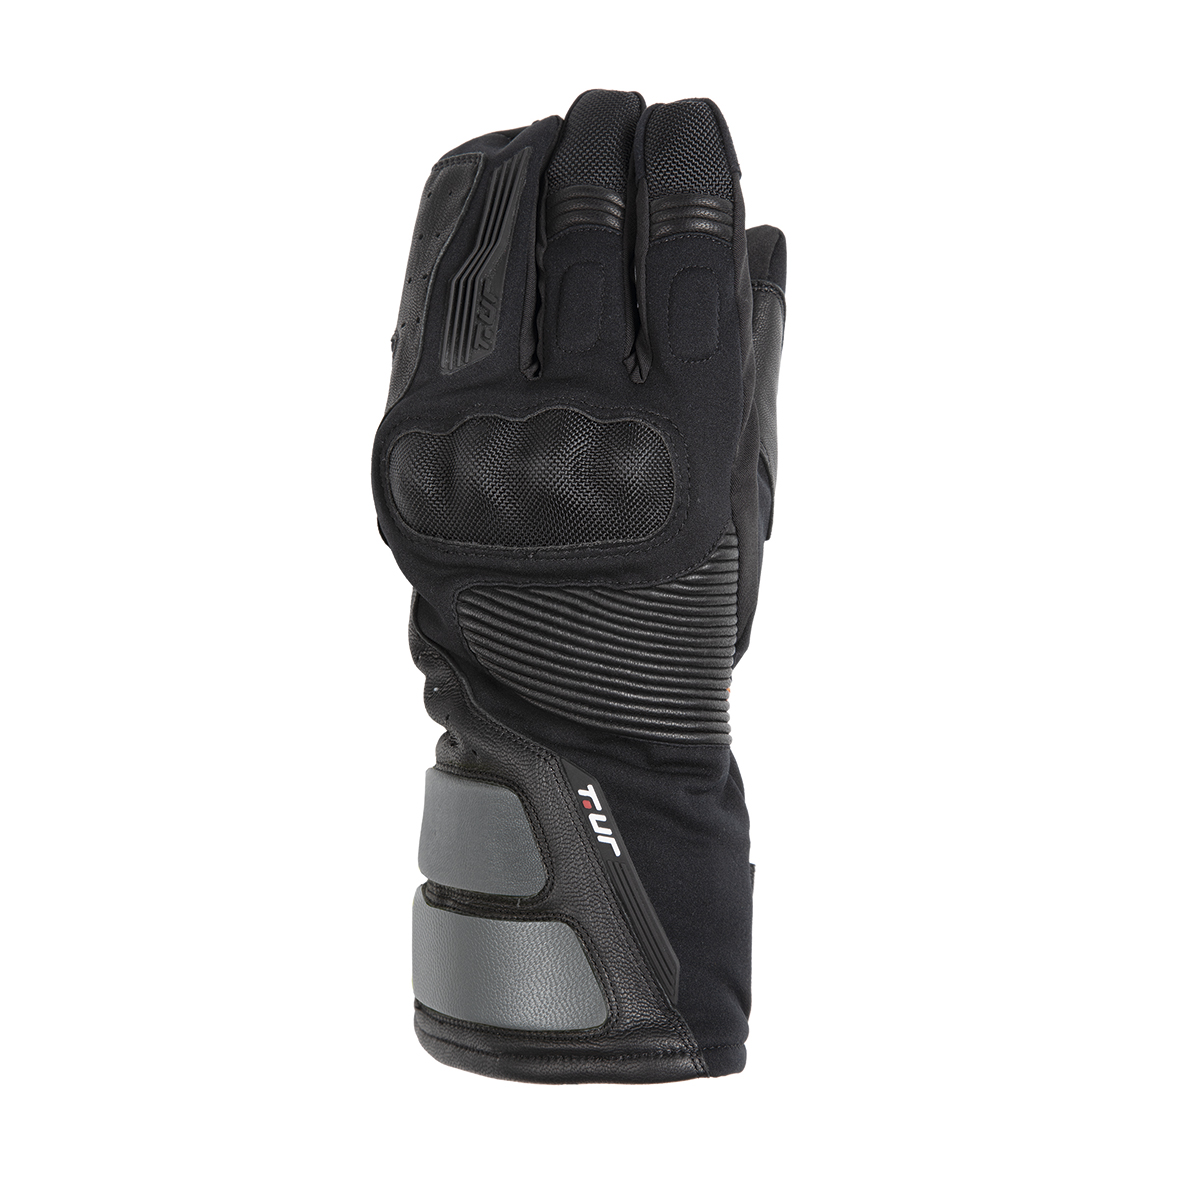 Los nuevos guantes G-ZERO de T.ur para combatir el frío en la moto